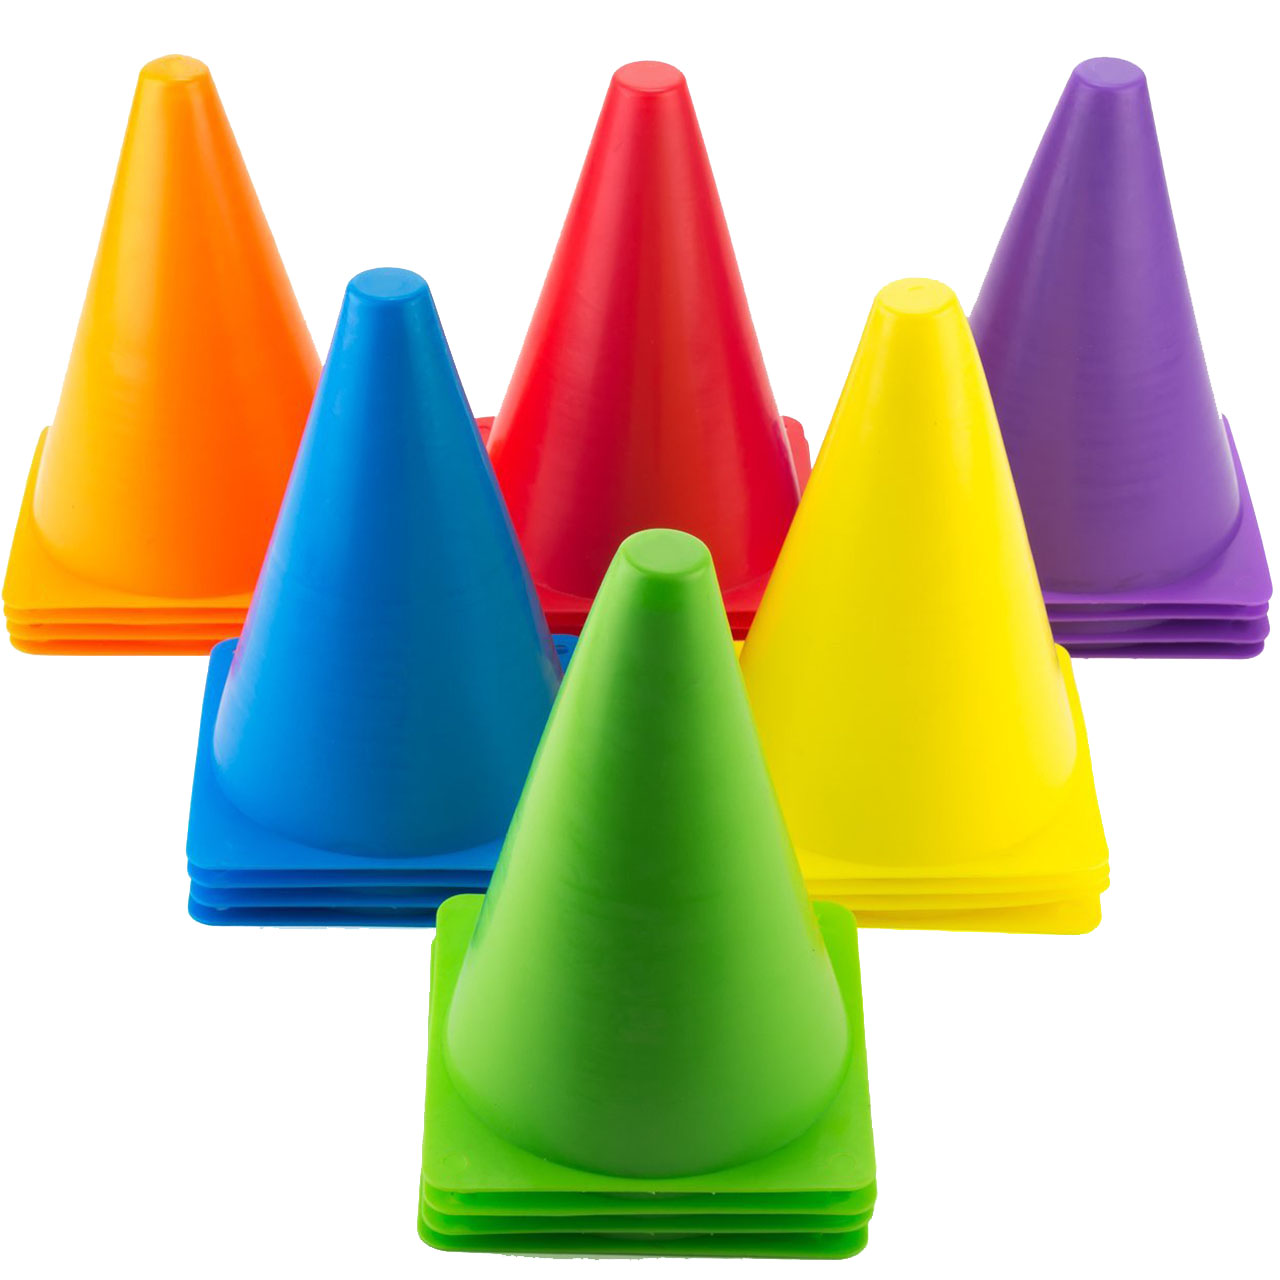 ست مانع تمرین مدل Training Cones 2020 در 5 رنگ مجموعه 20 عددی به همراه پاوربالانس